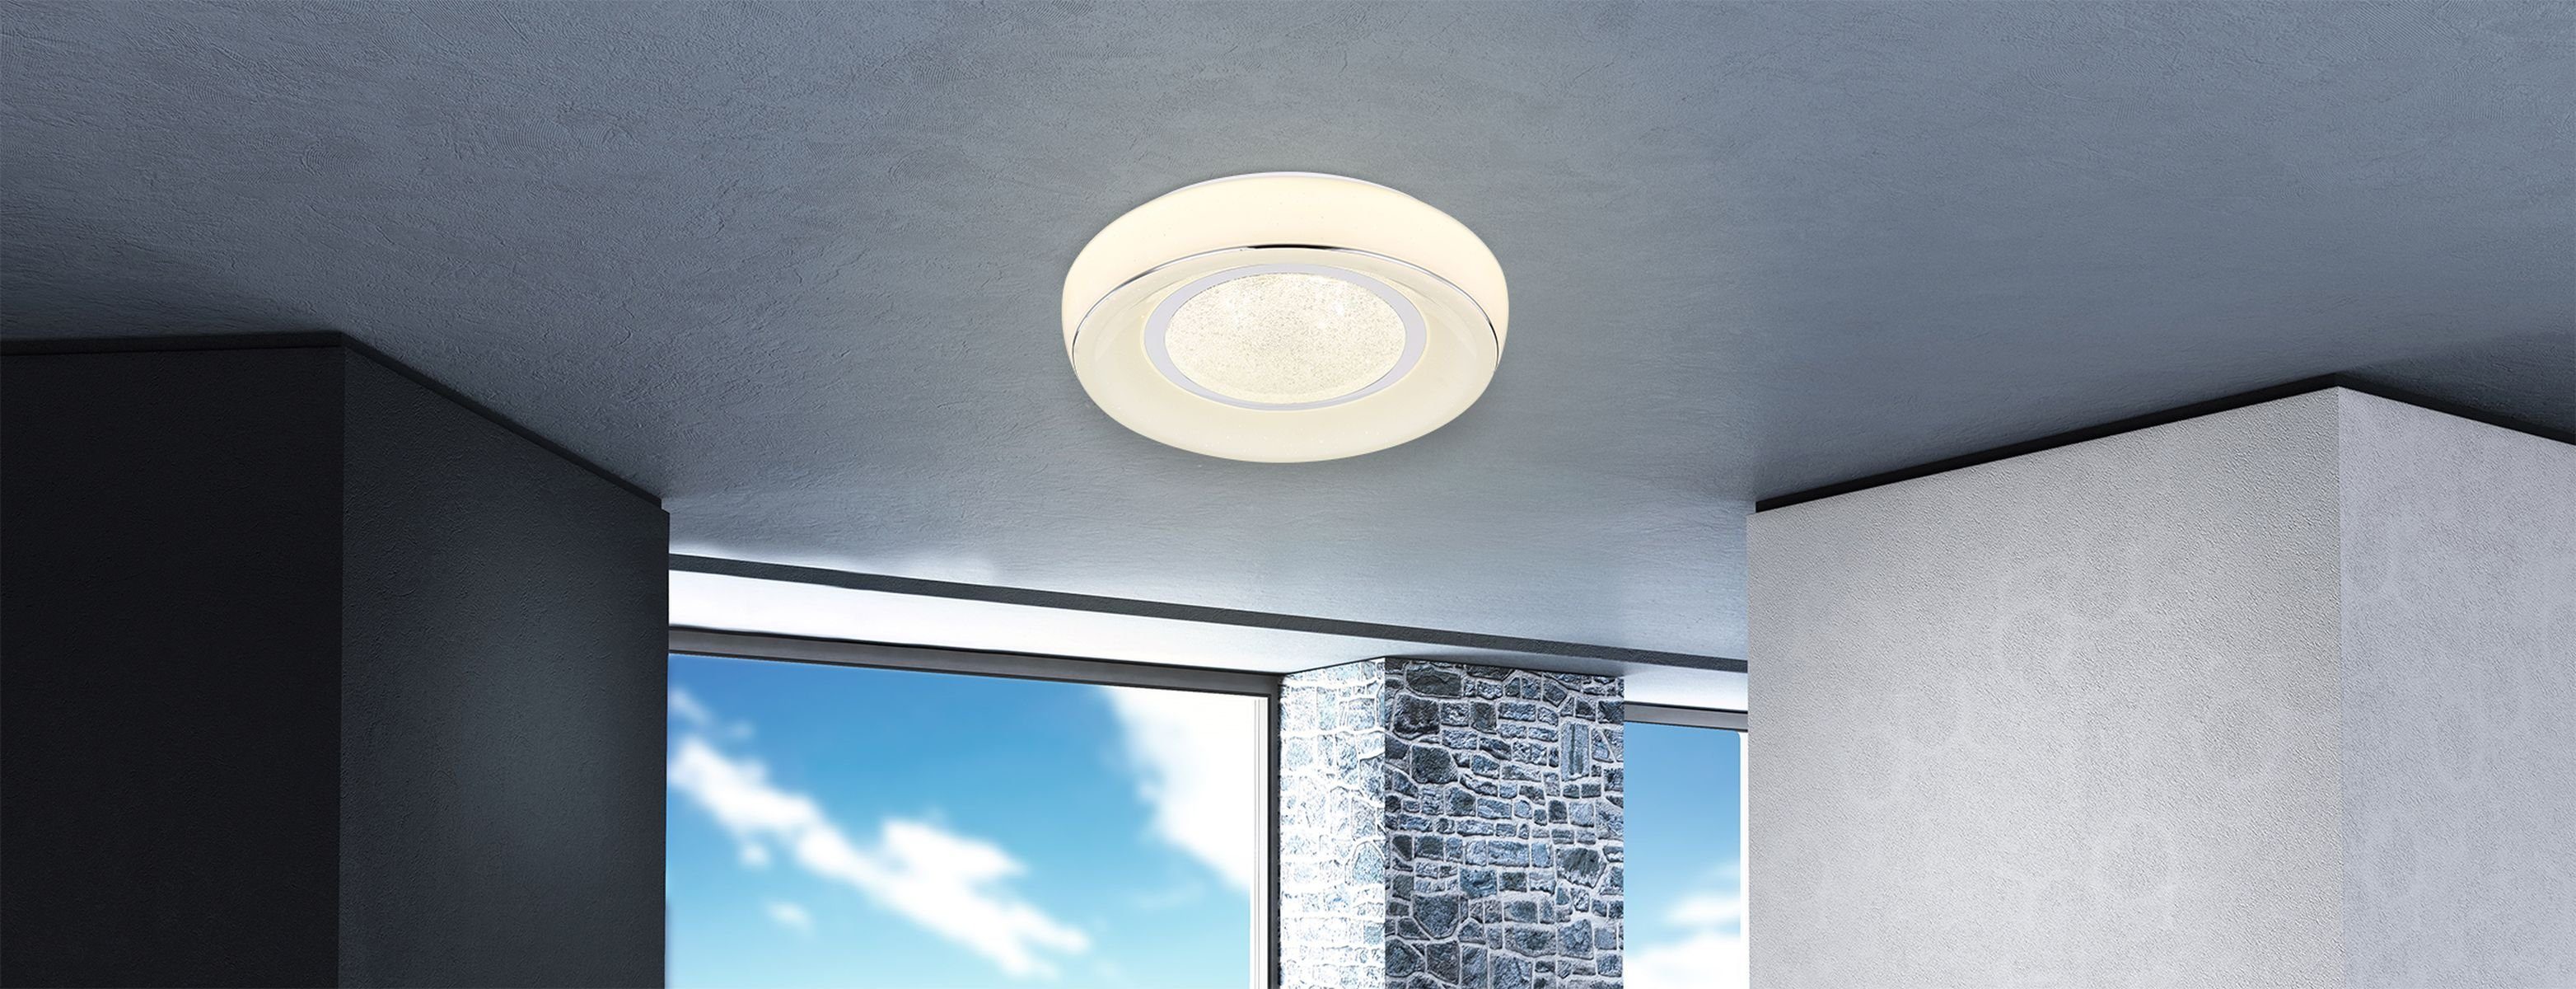 Deckenleuchte Deckenlampe Fernbedienung Globo dimmbar LED GLOBO Deckenleuchte Wohnzimmer